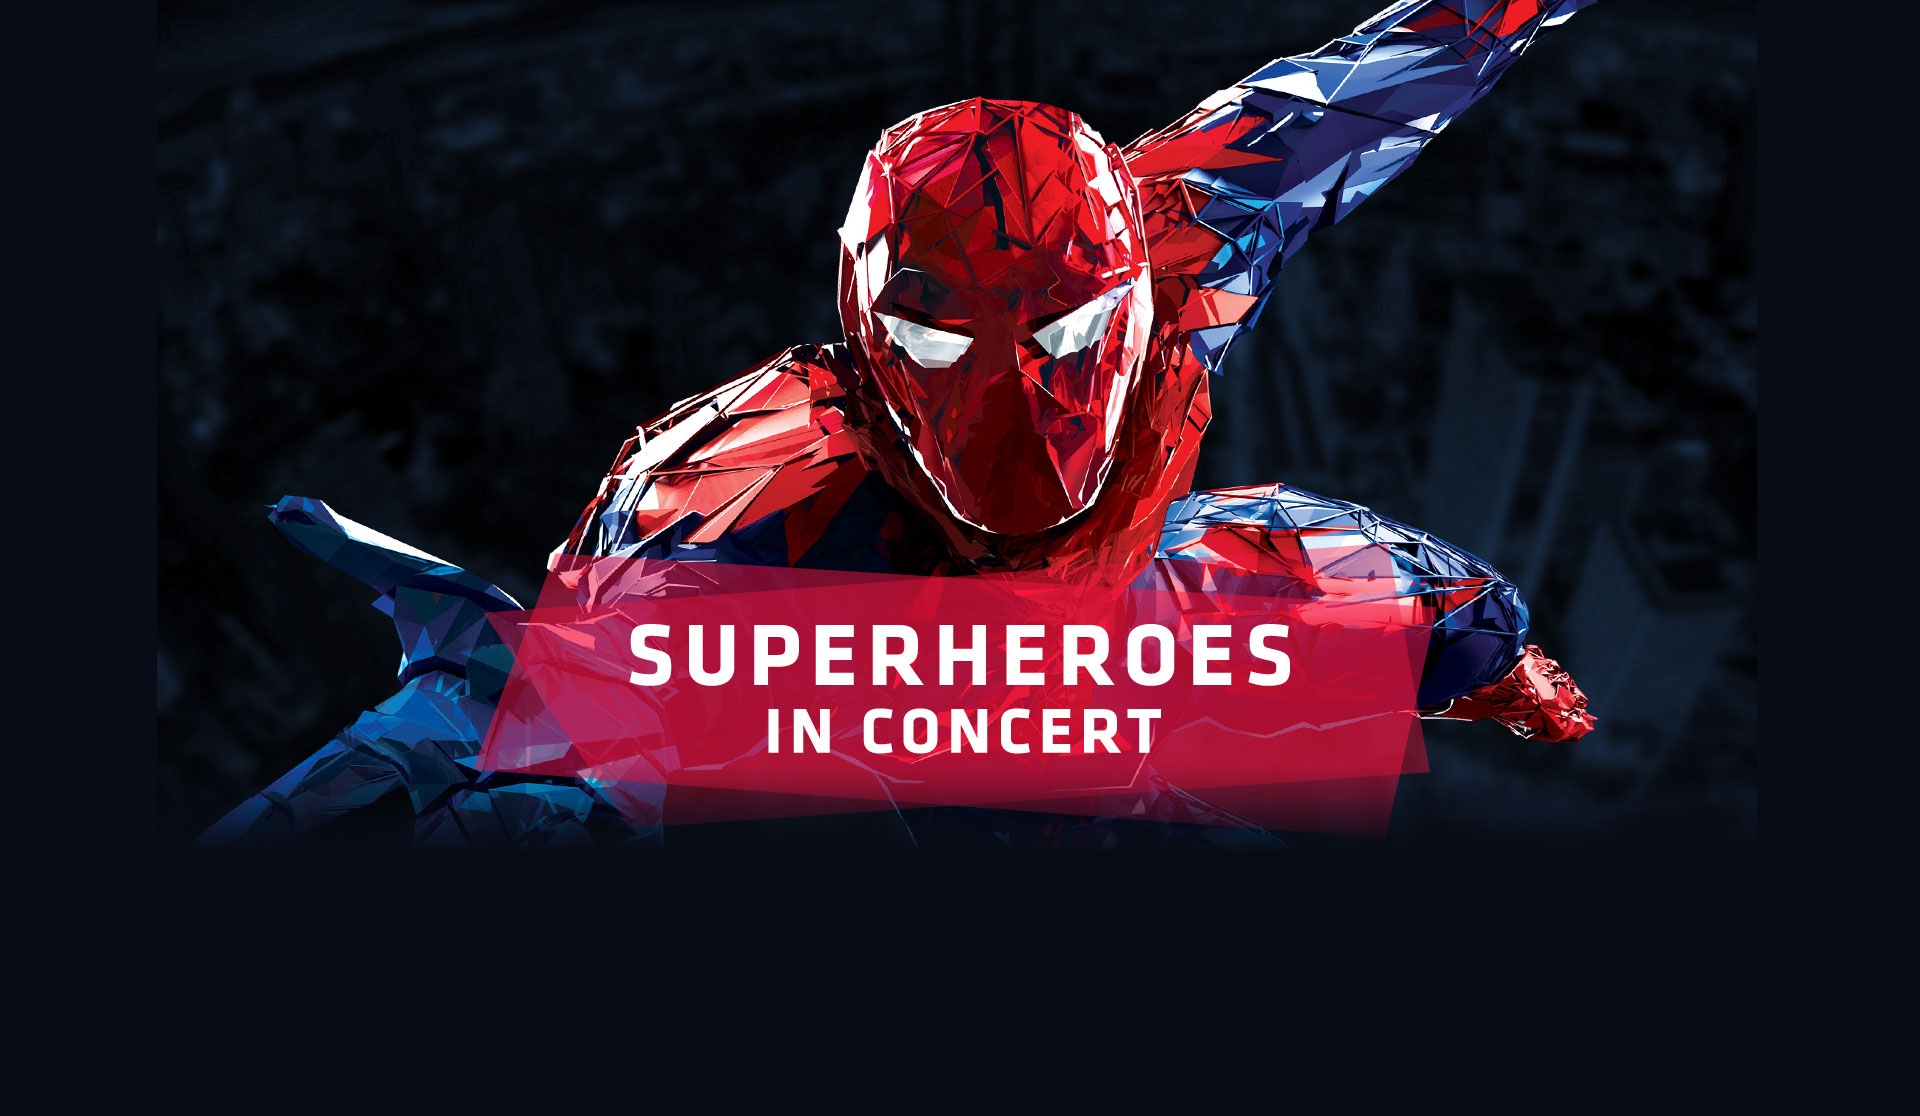 29.04.2017 – Superheroes in concert, Kraków